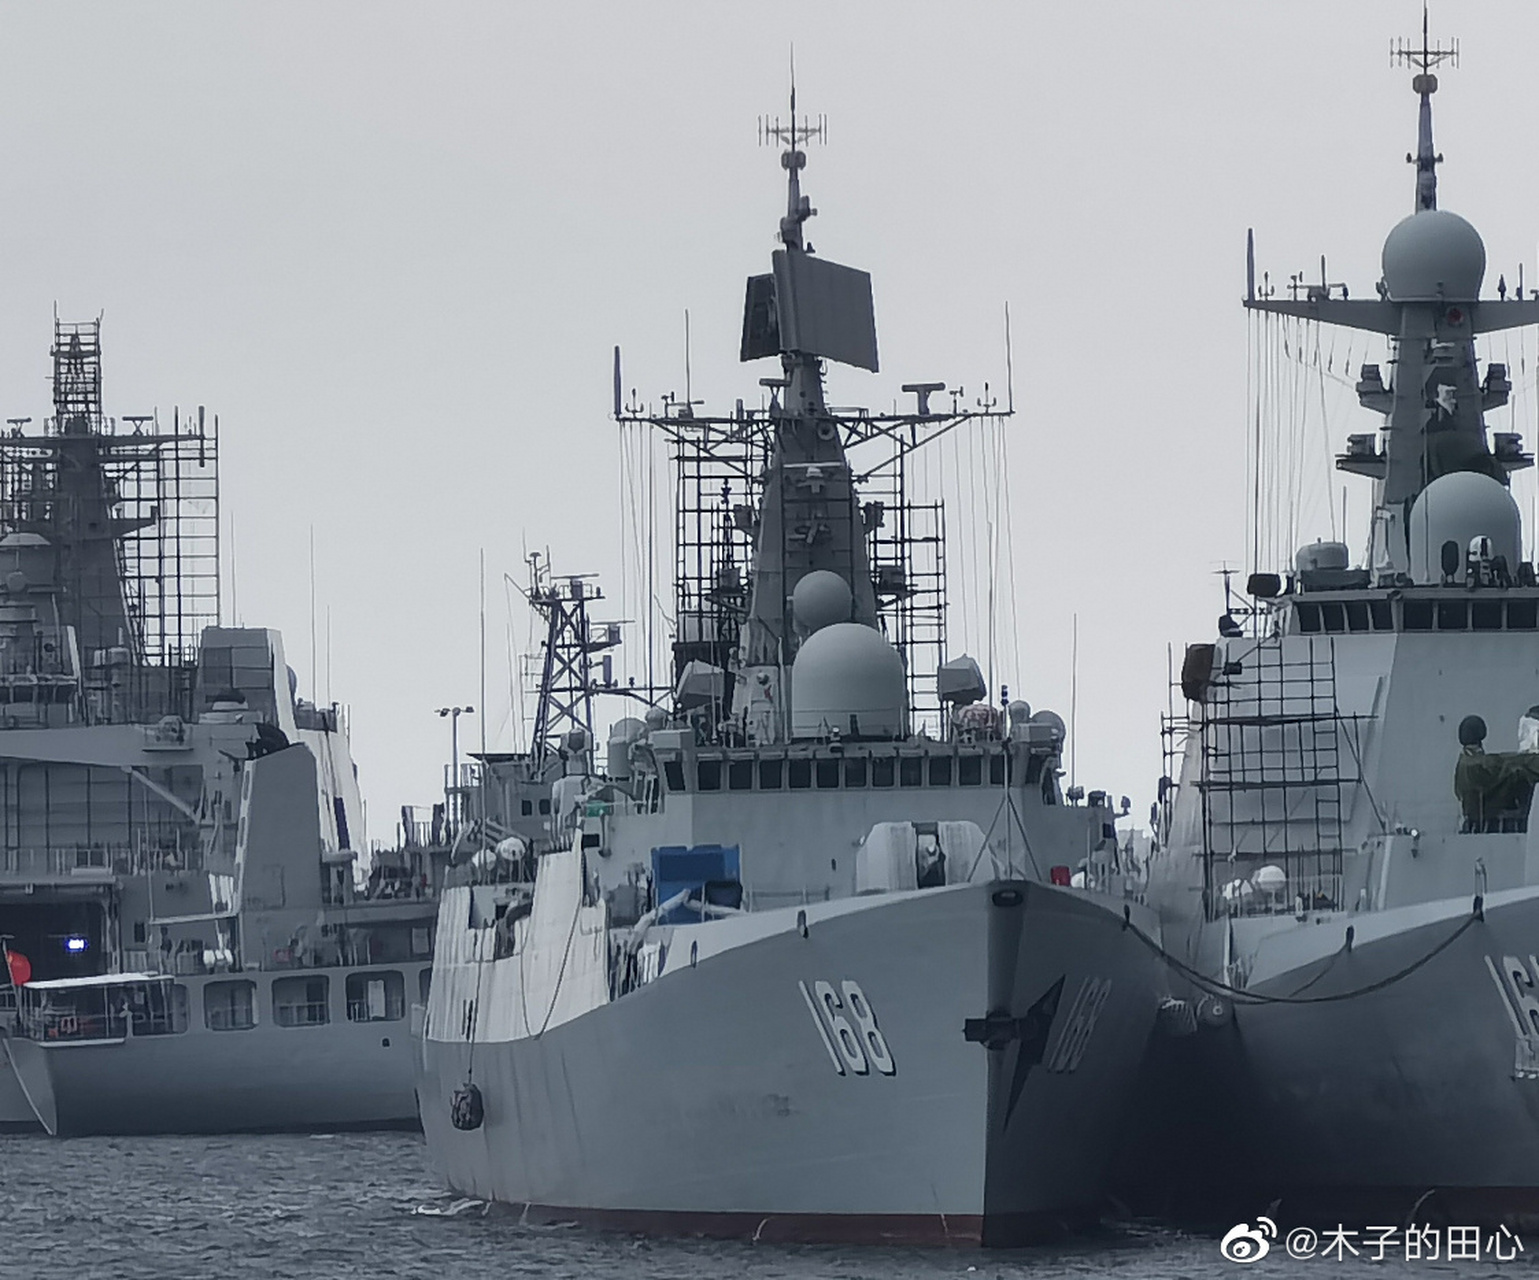 即将完成改造的168广州号导弹驱逐舰,从外观看不出意外的升级为大号